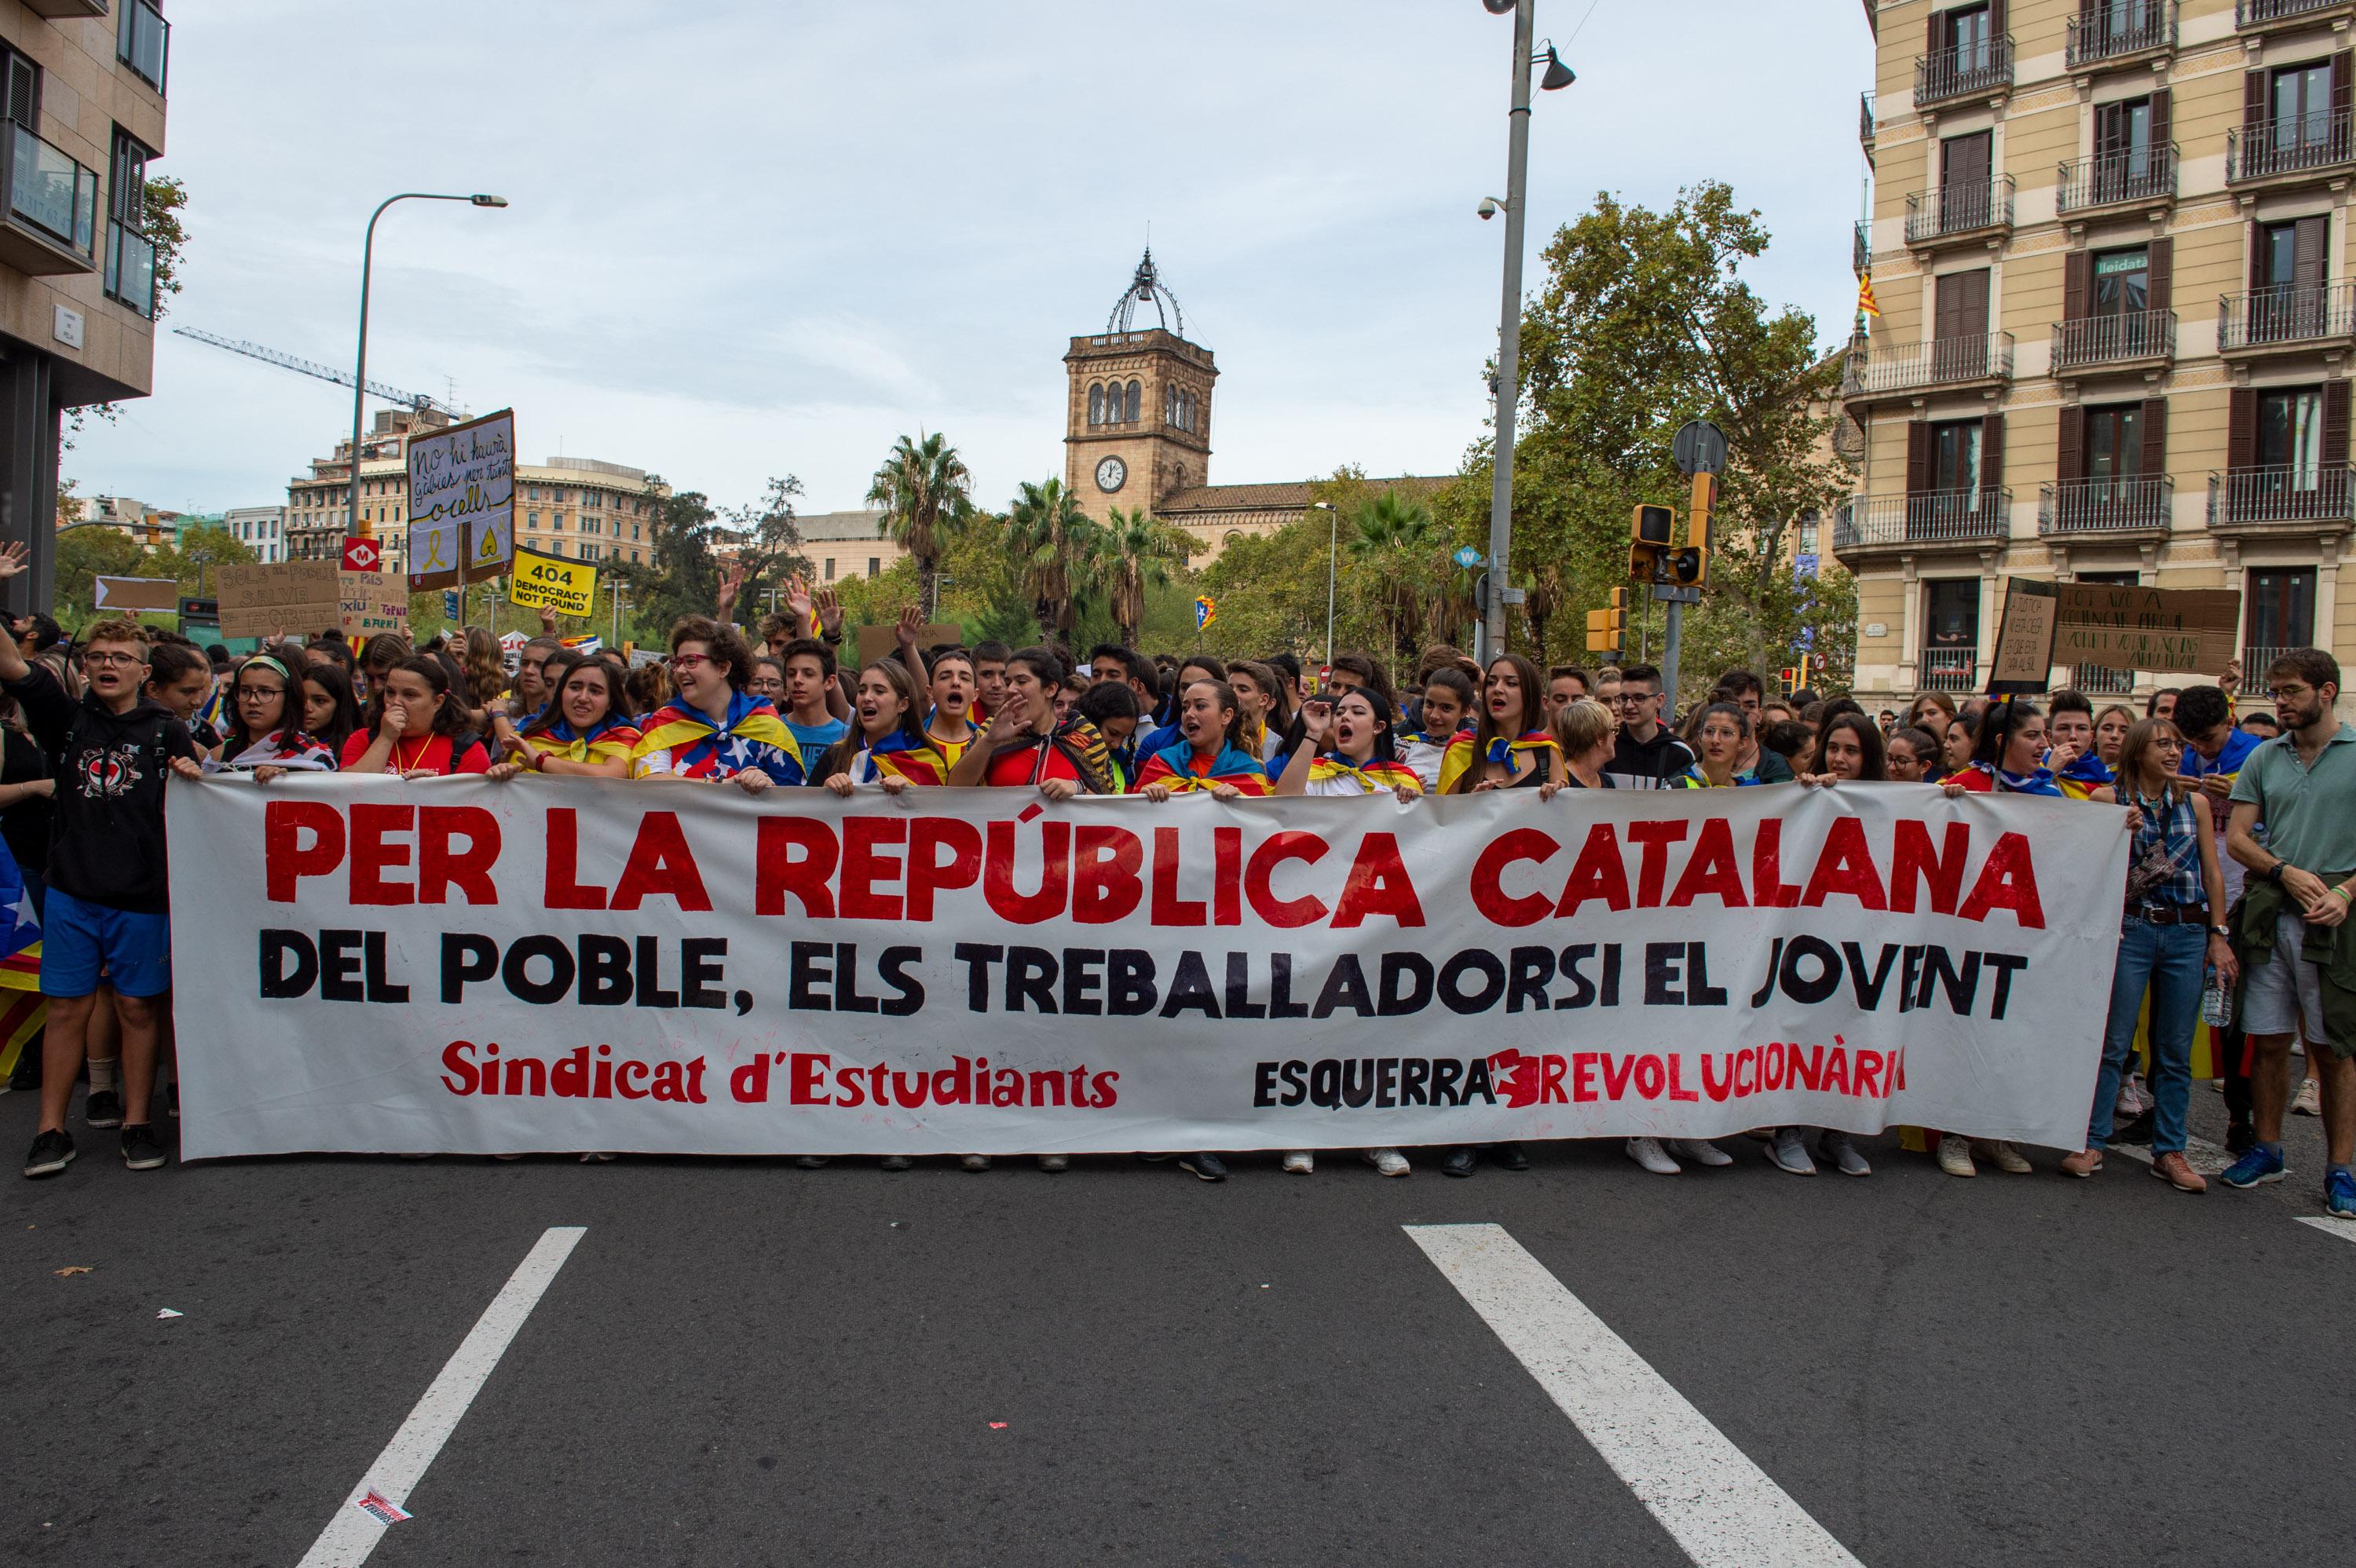 Cabecera de la manifestación estudiantil organizada en la Plaza de la Universidad de Barcelona dentro de los actos convocados con motivo de la huelga general en Catalunya en reacción a la sentencia del ‘procés’ en